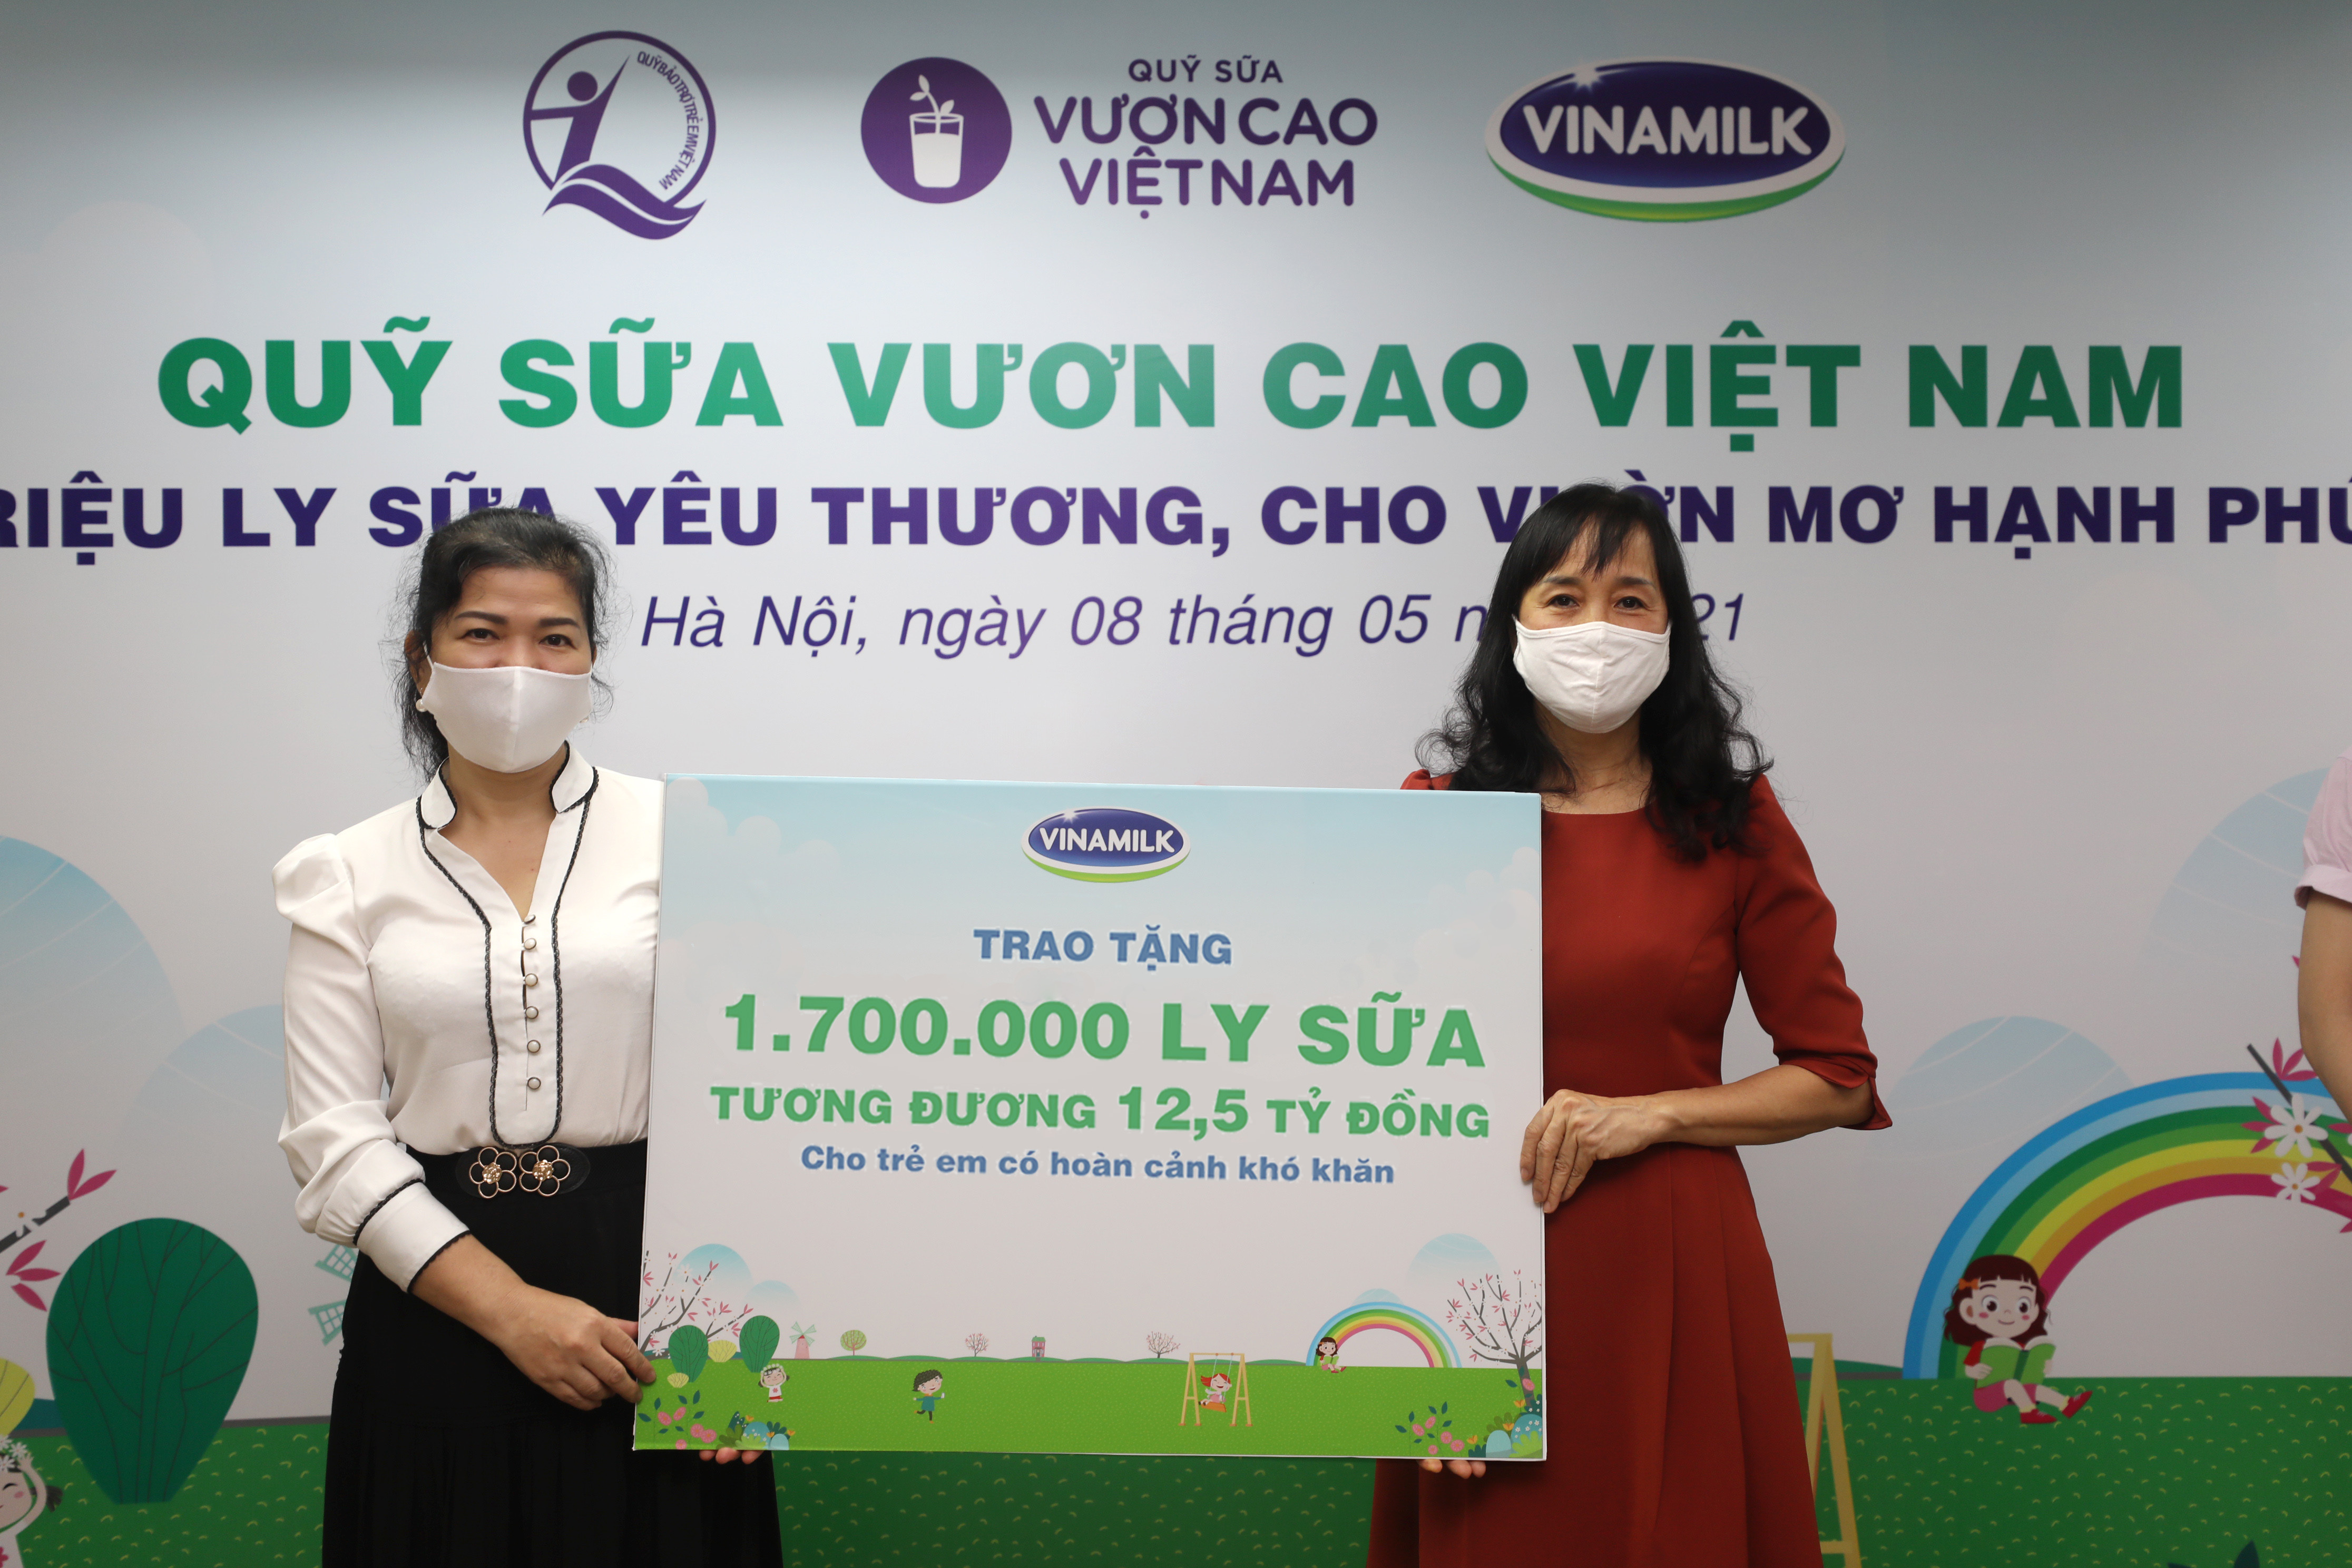 4: Trong năm 2020 và 2021, Vinamilk đã trao tặng tổng cộng 3,4 triệu ly sữa, tương đương 25 tỷ đồng thông qua Quỹ sữa Vươn cao Việt Nam